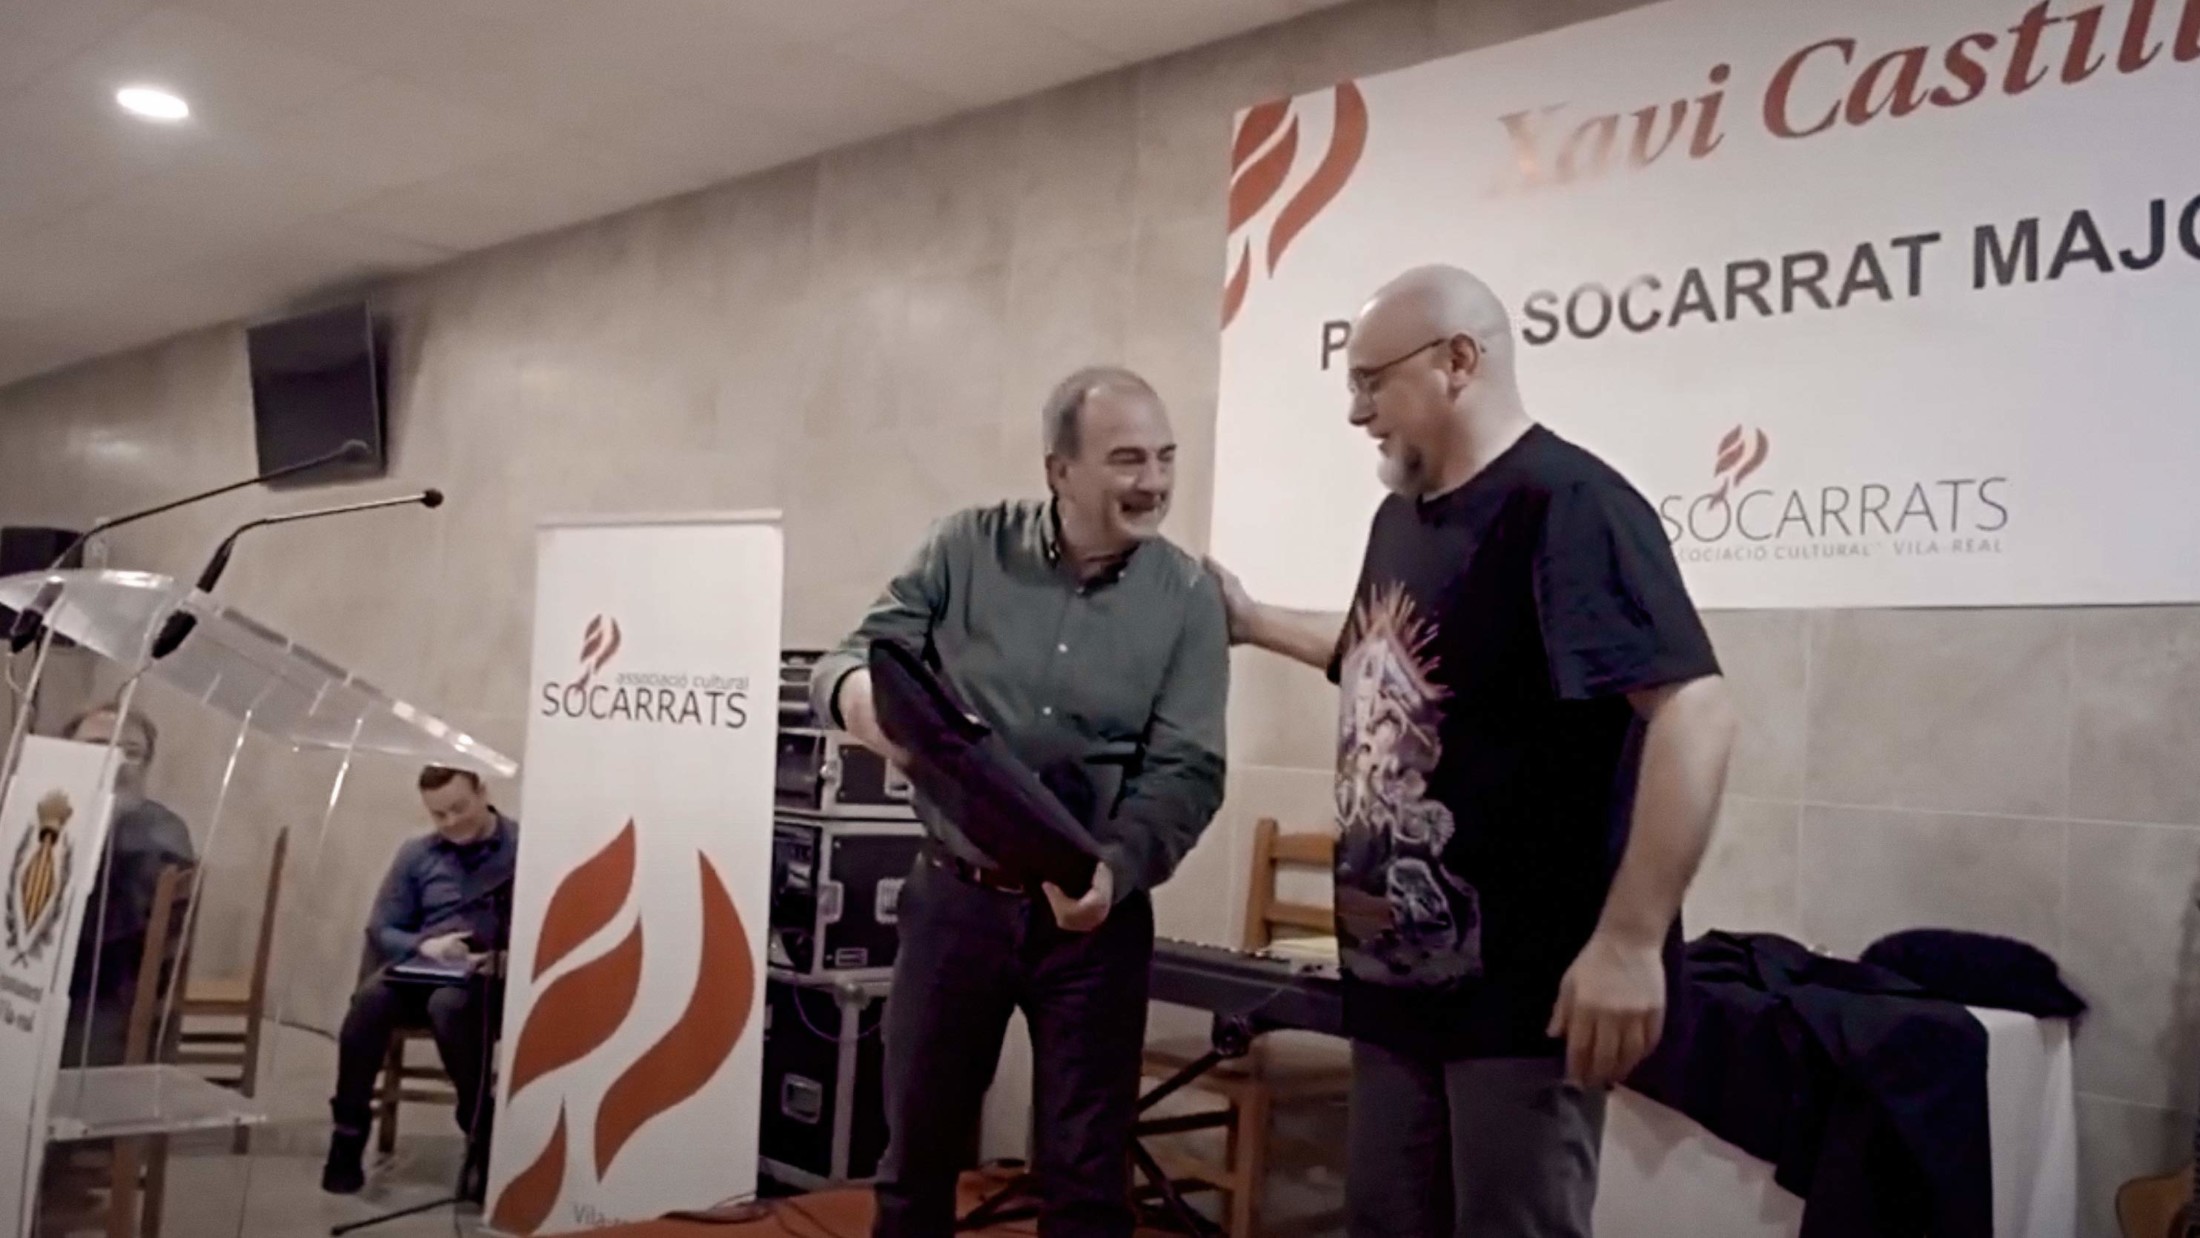 Reportatge en vídeo de l’acte Socarrat Major 2020, Xavi Castillo